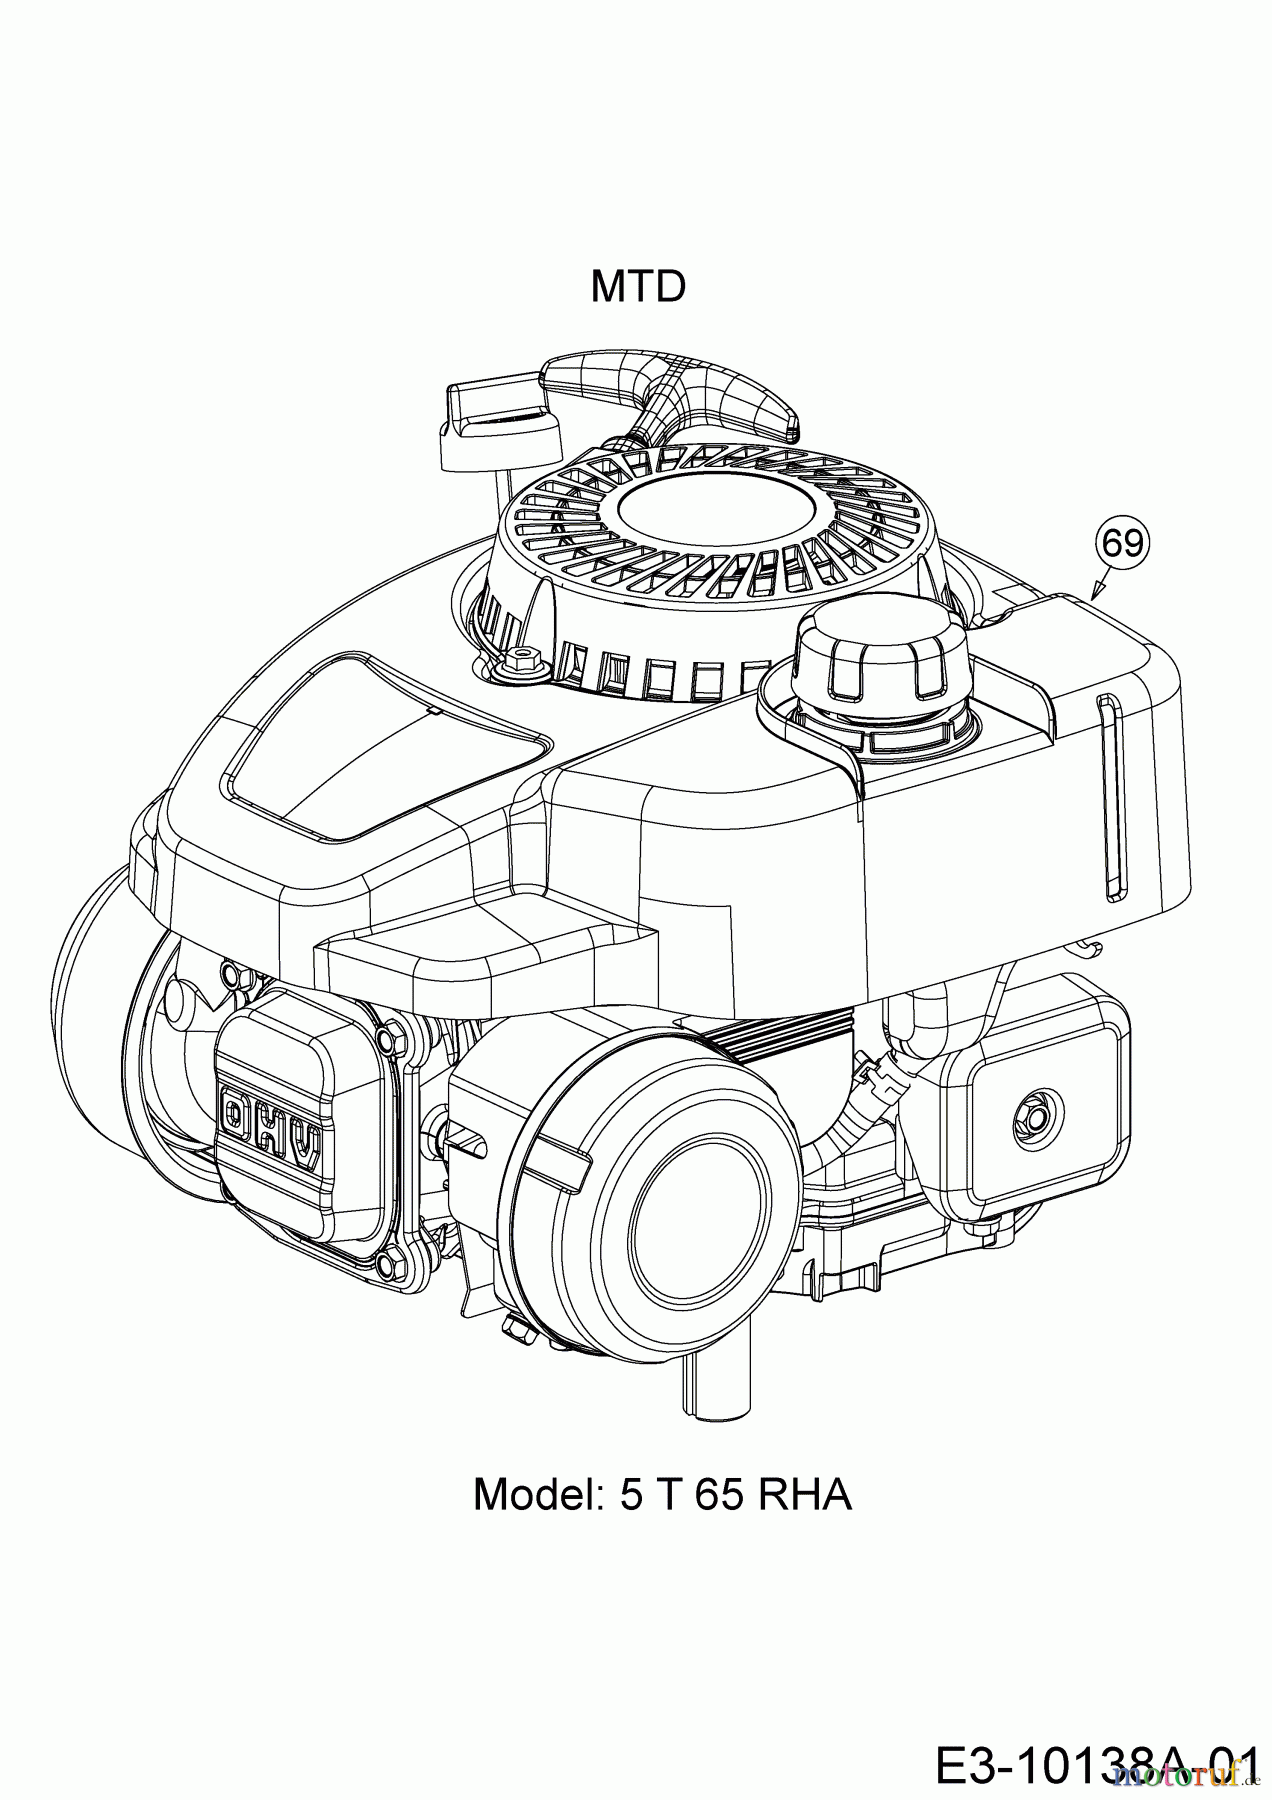  Wolf-Garten Motormäher A 4600 11A-TOSC650  (2018) Motor MTD